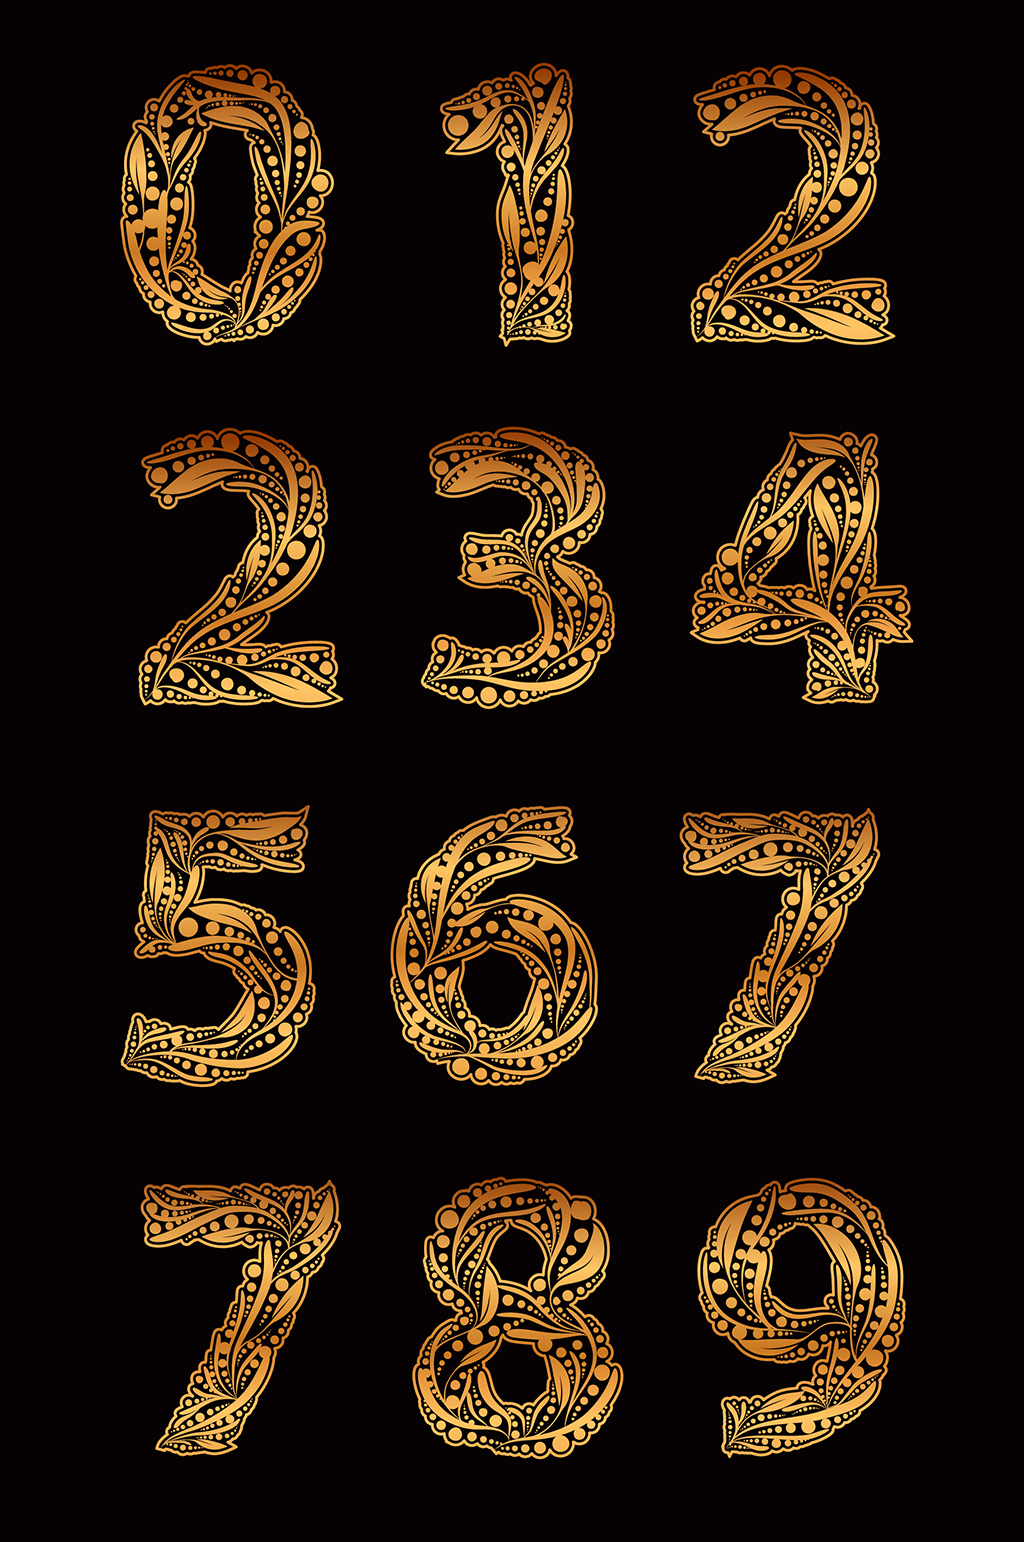 数字1-10各种字体模板图片